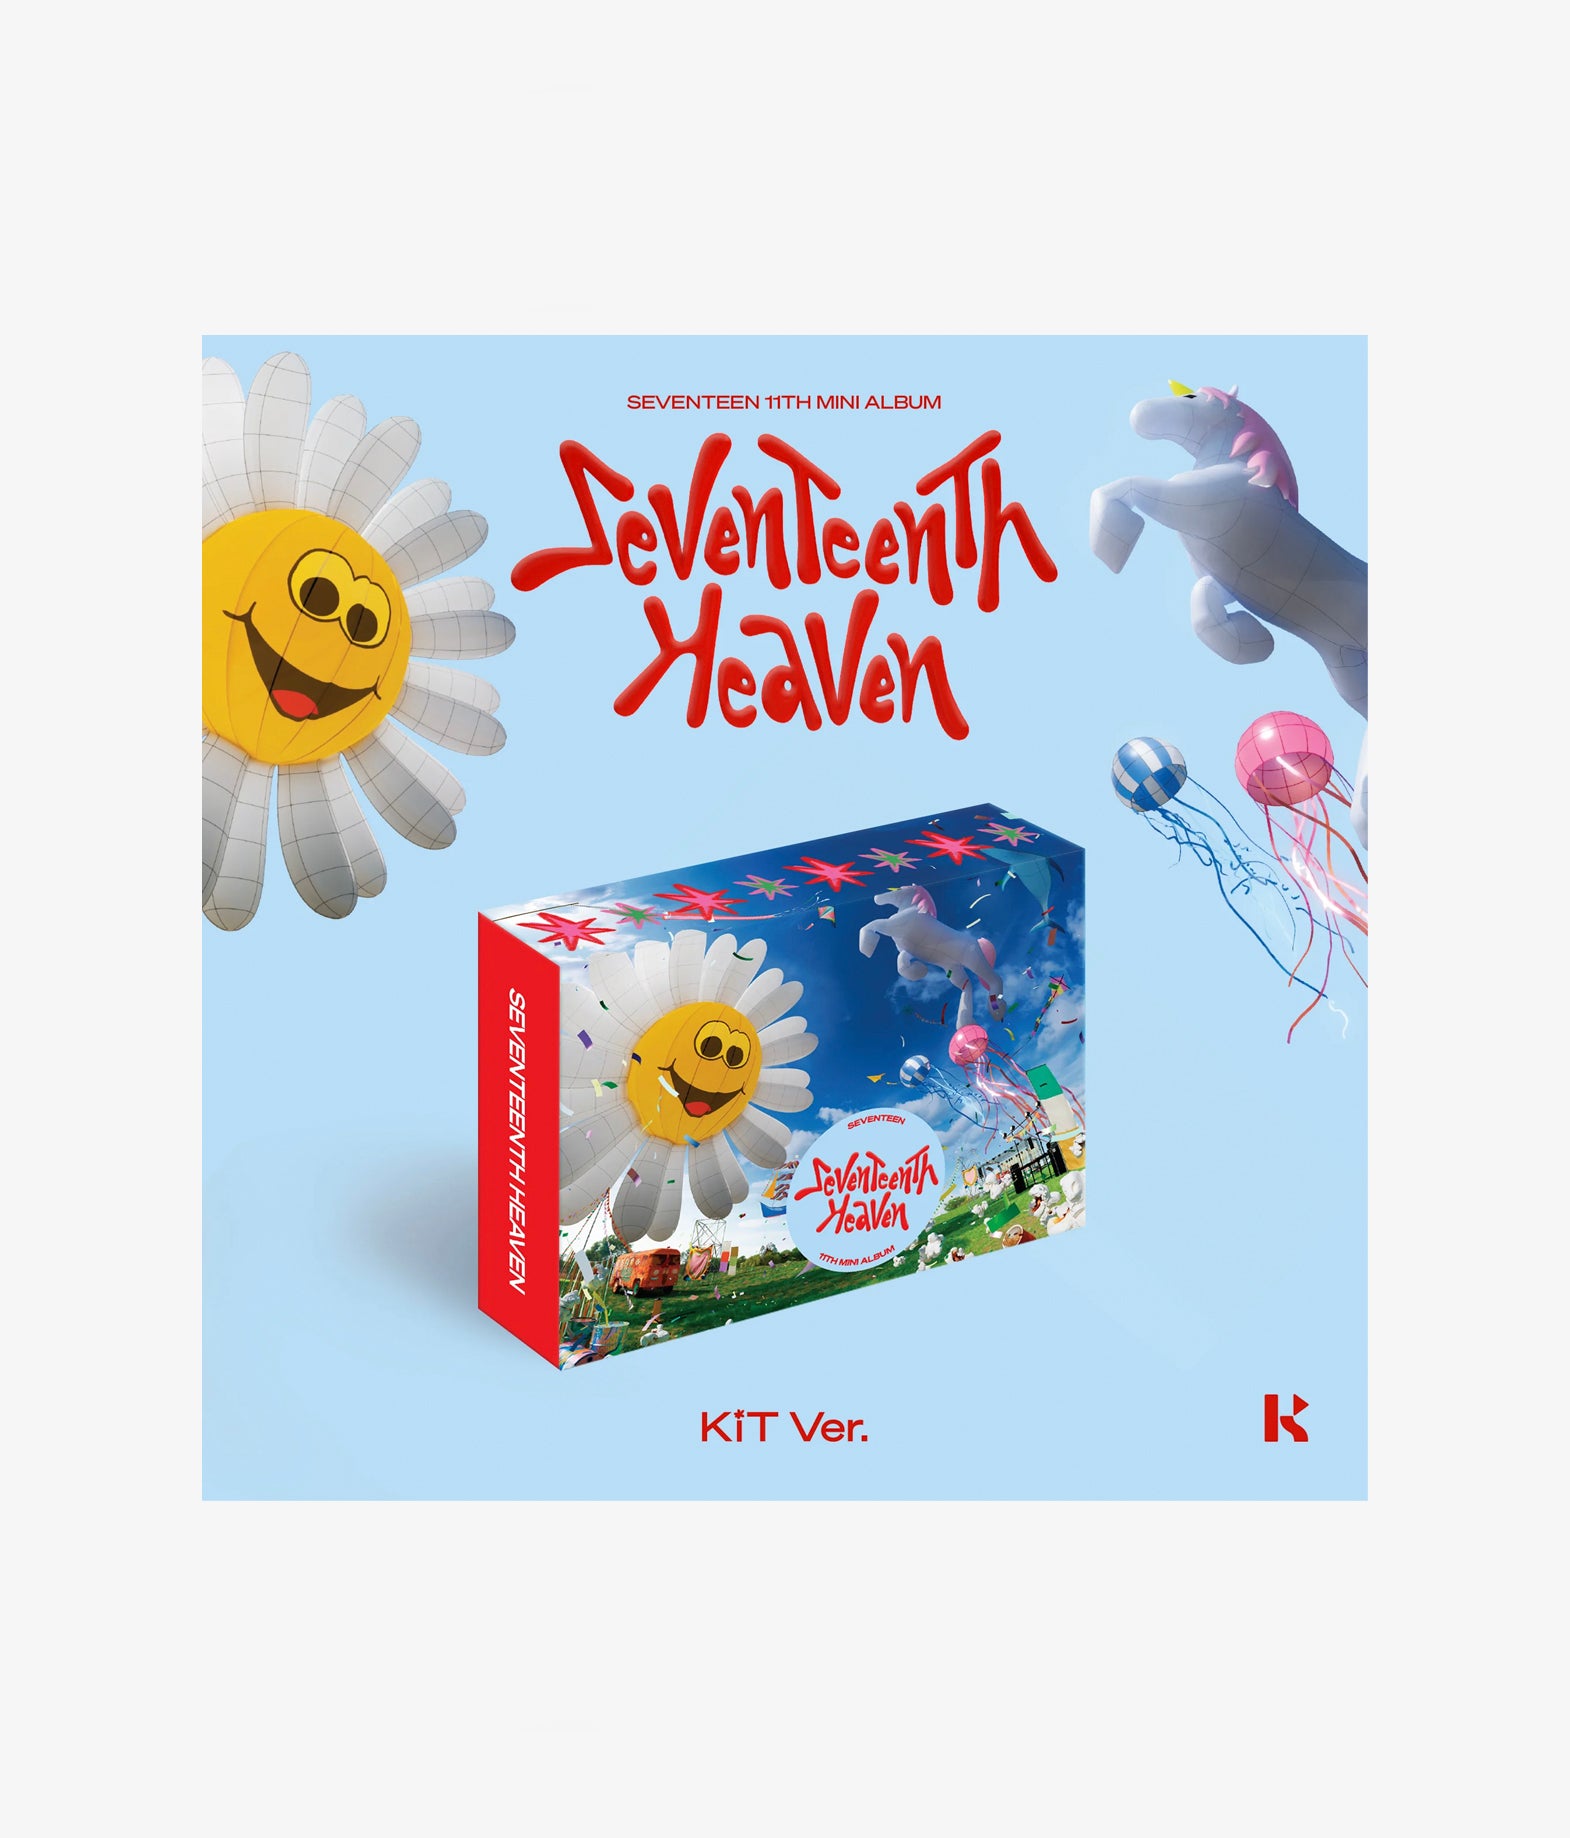 Seventeen - Seventeenth Heaven (Kit ver.)